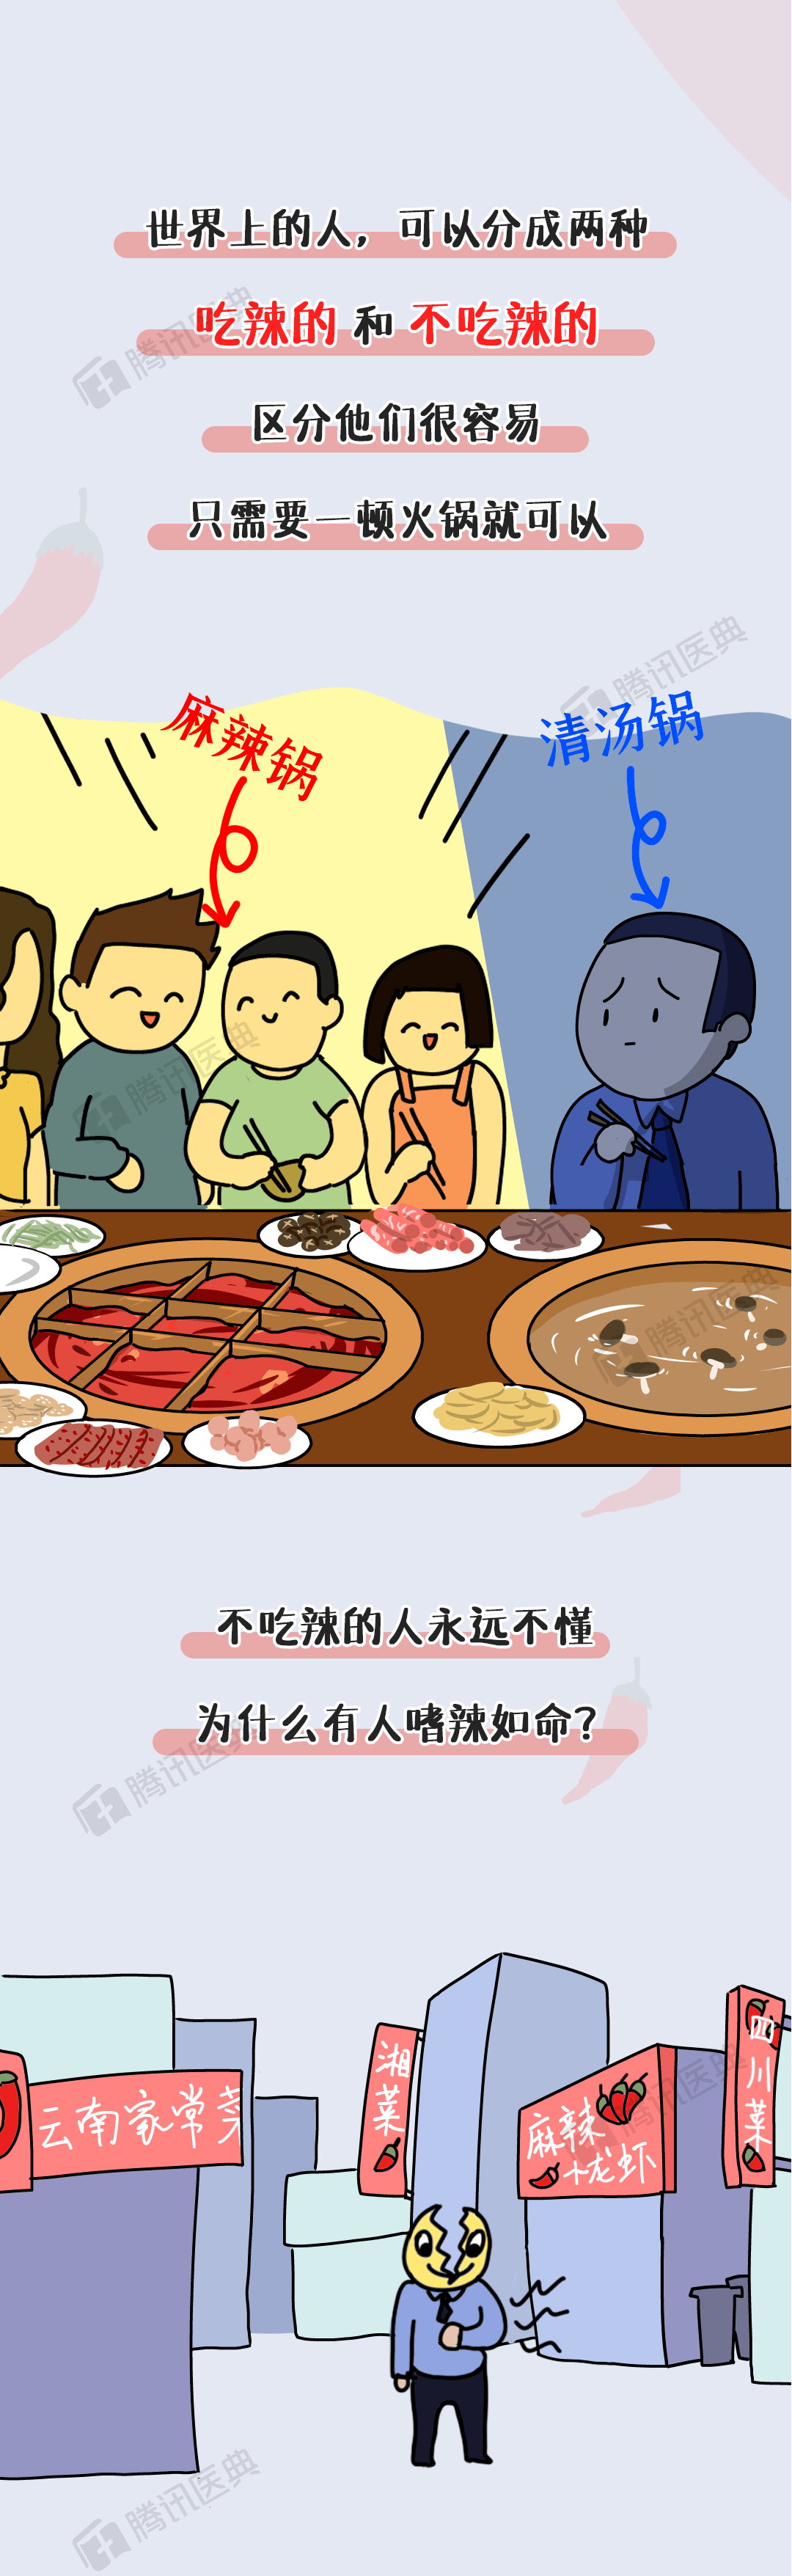 餐饮无辣不欢红辣椒小龙虾海报设计图片下载 - 觅知网